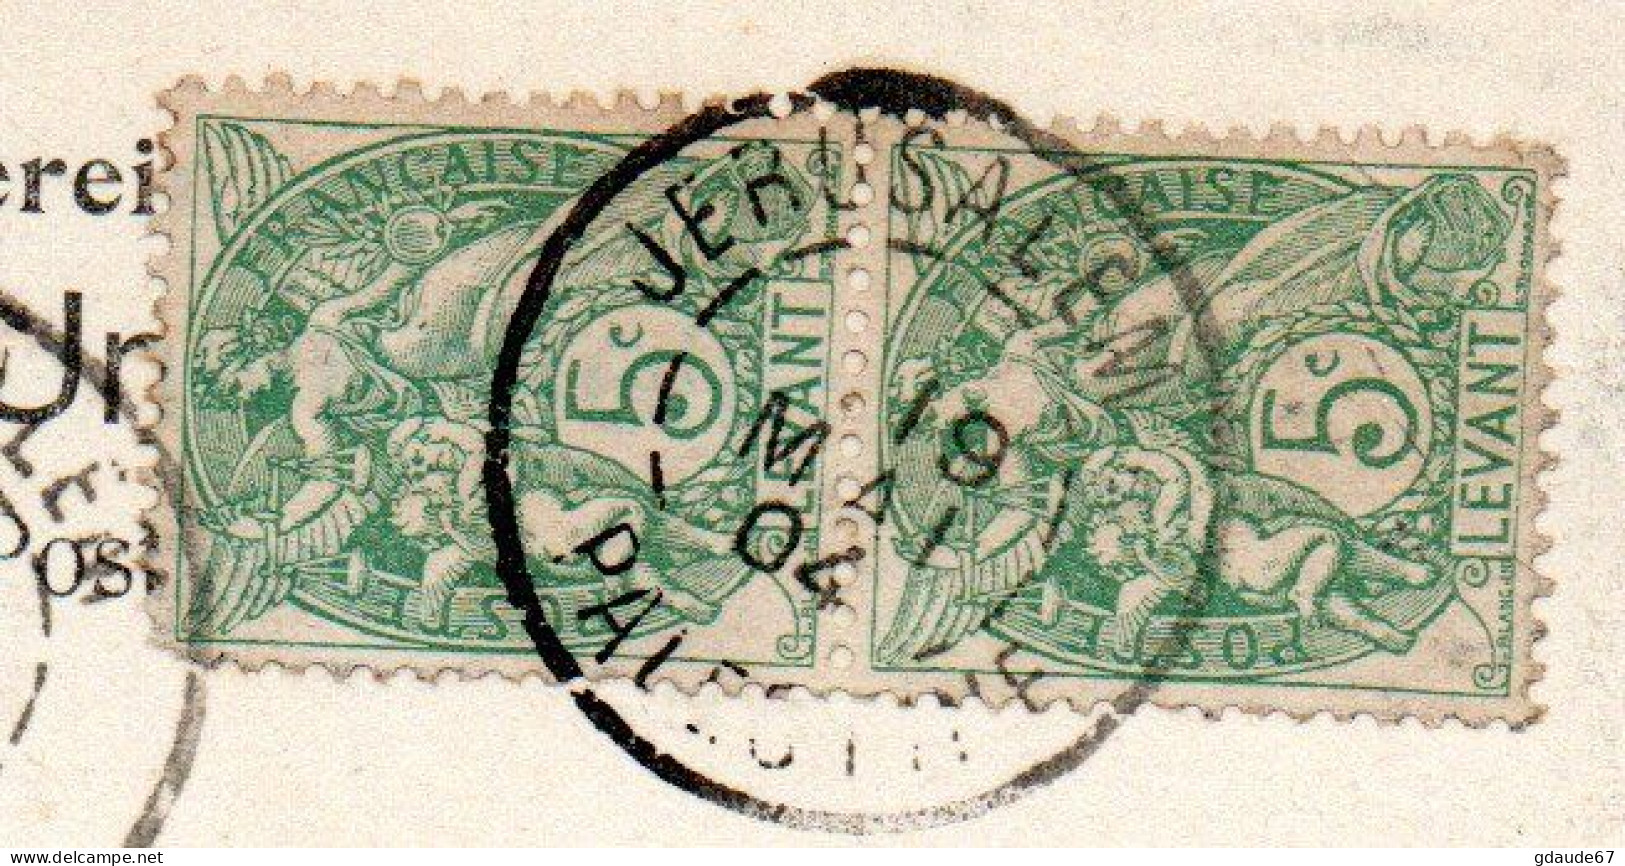 1904 - CP De JERUSALEM (PALESTINE / LEVANT) Avec CACHET BUREAU FRANCAIS A L'ETRANGER BFE SUR PAIRE TYPE BLANC - Briefe U. Dokumente